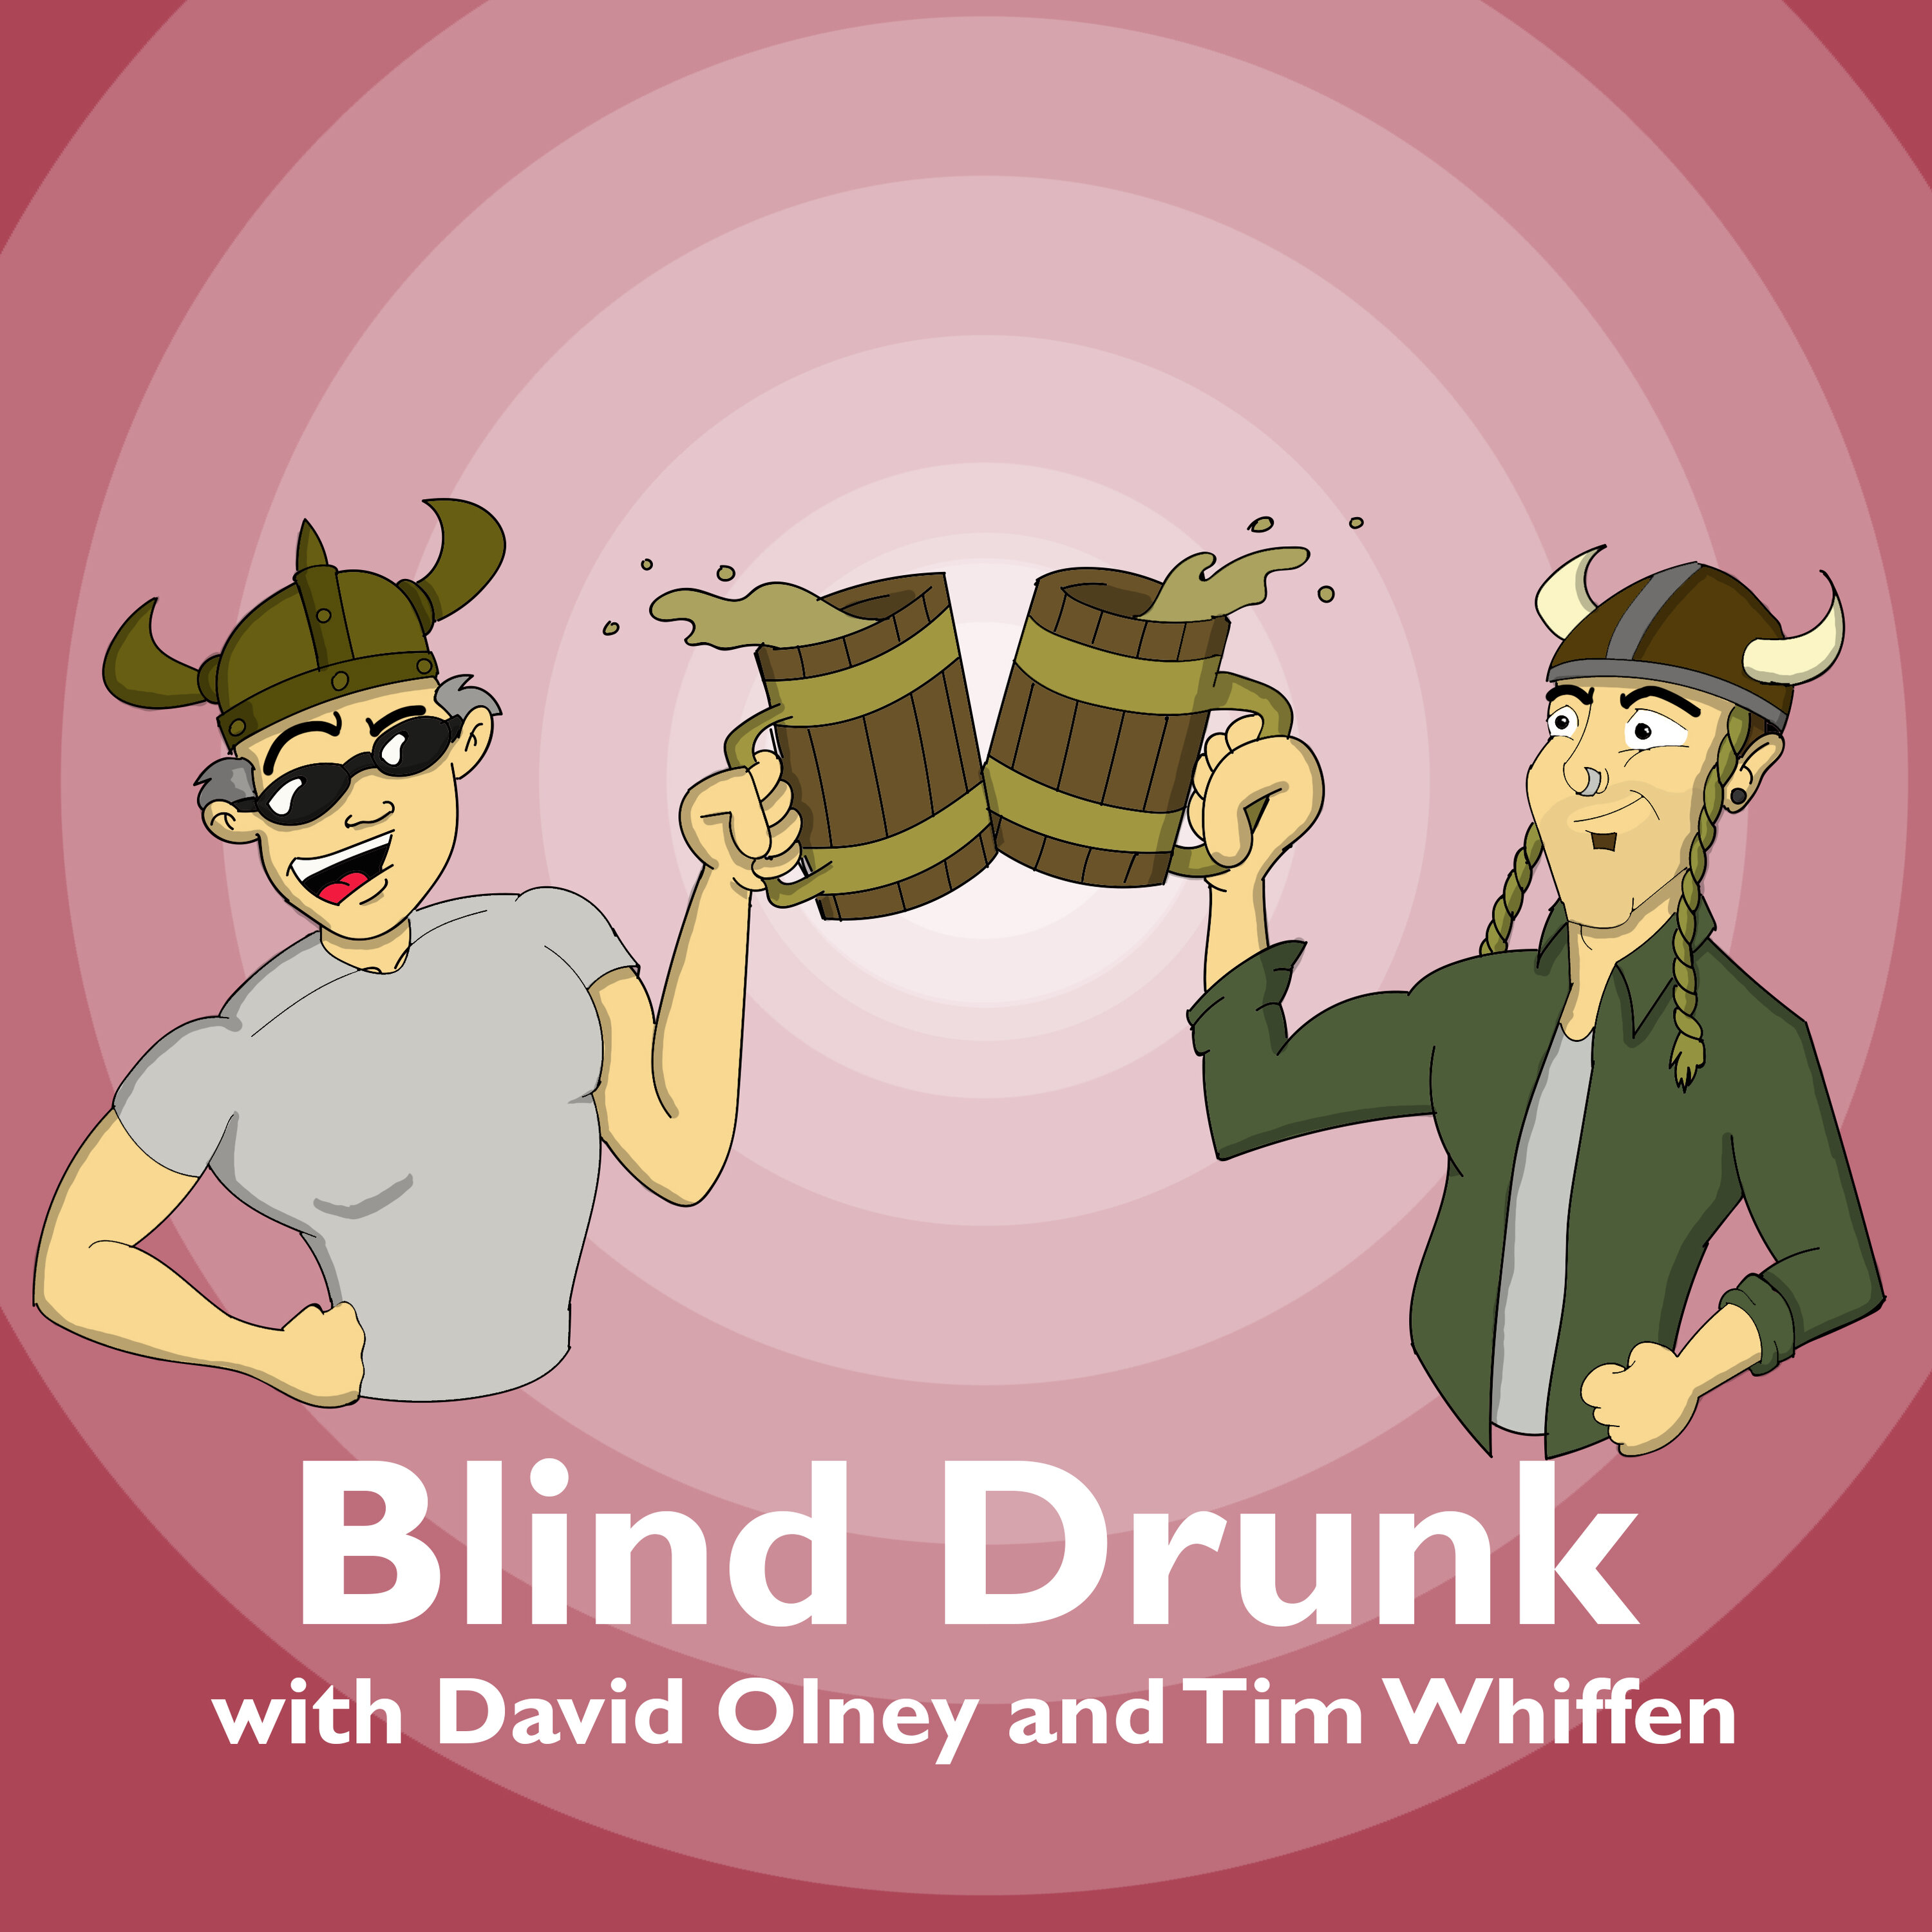 Blind Drunk - Prancing Ponies, Pet Peeves, and Prequels